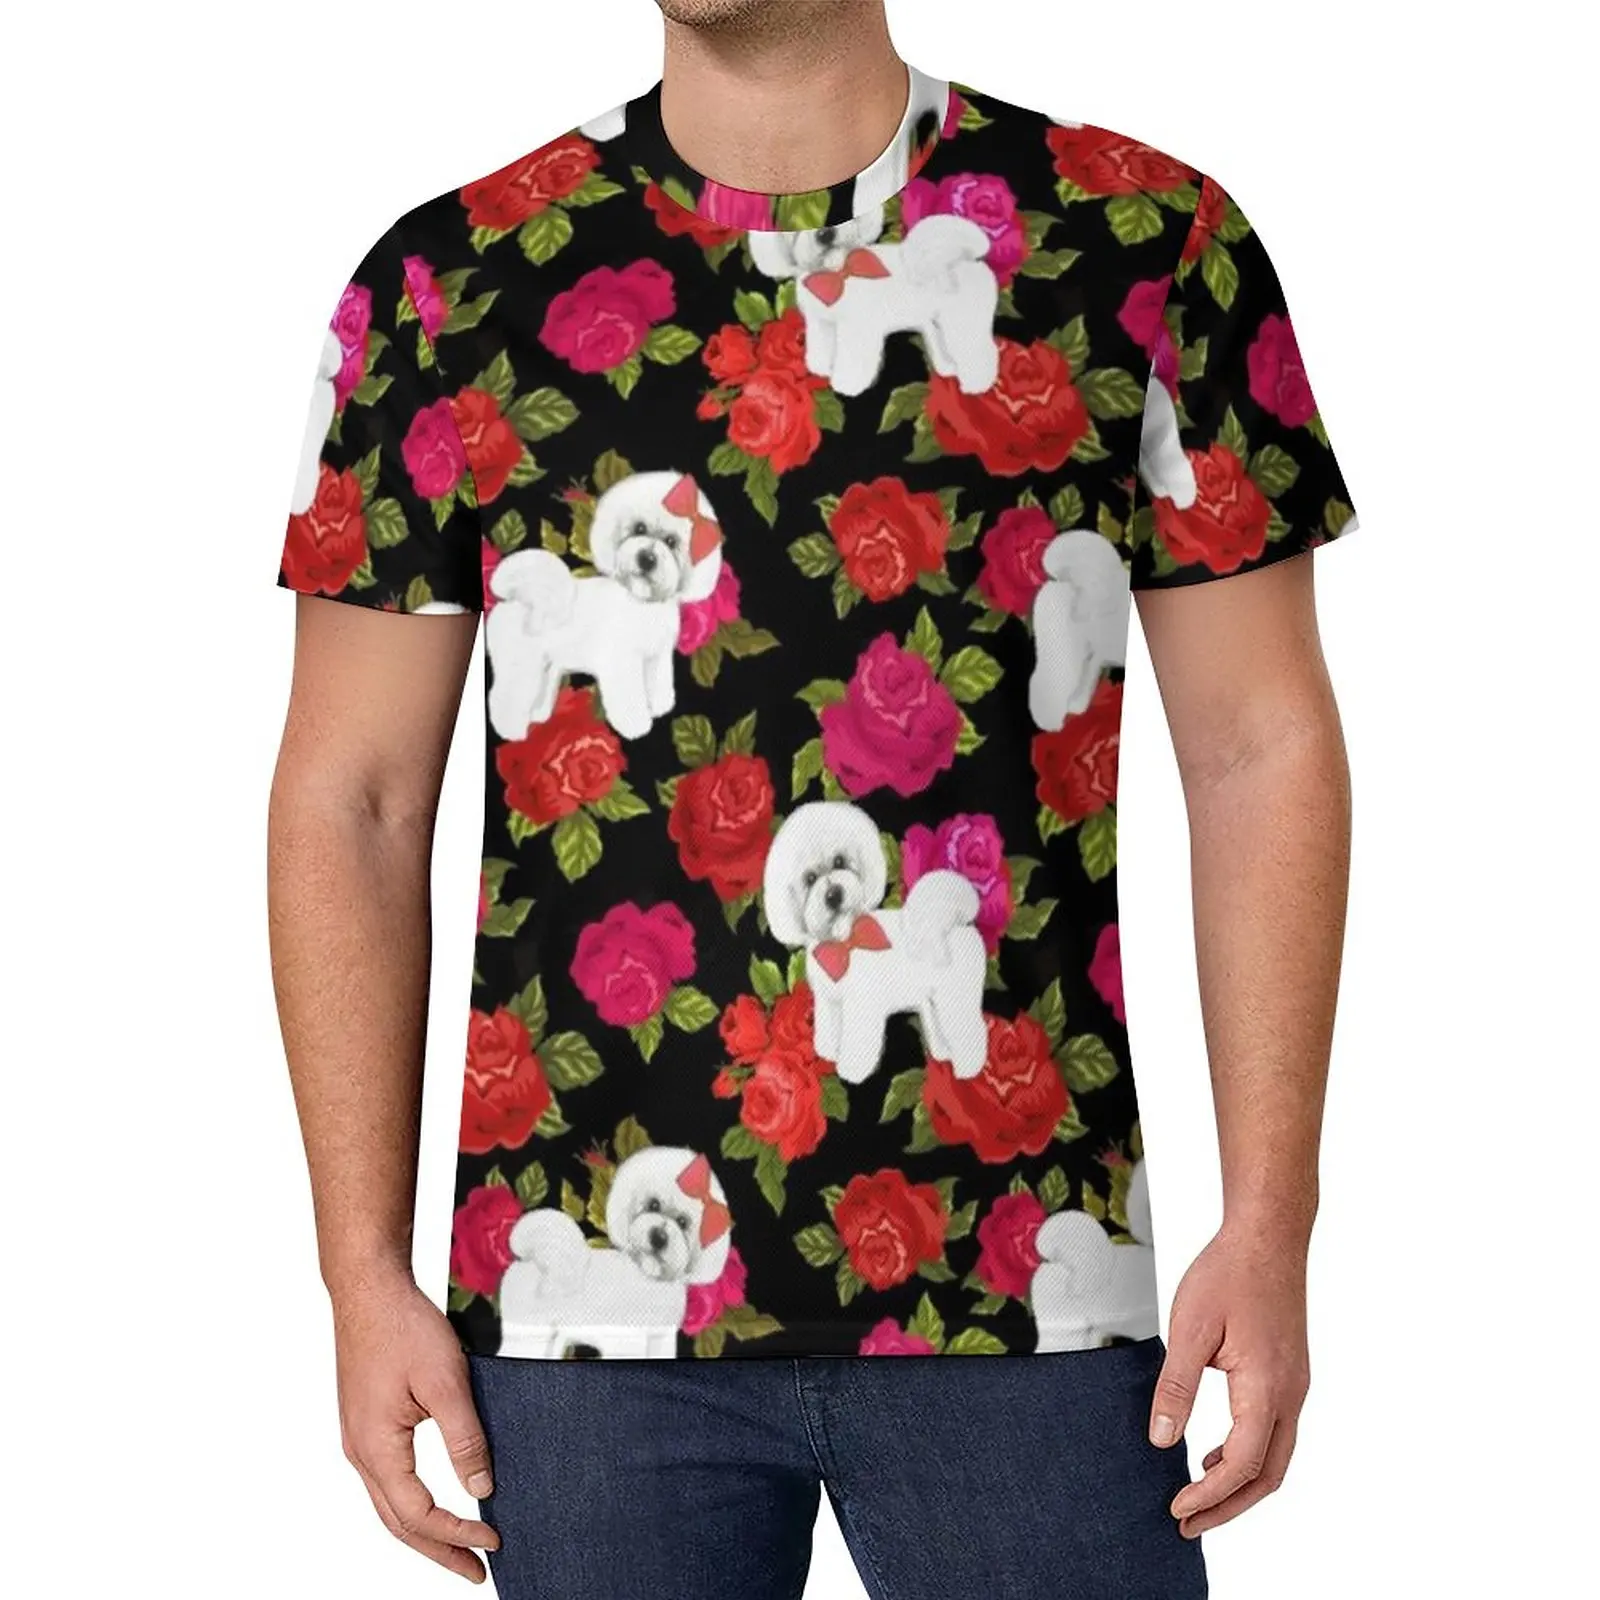 

Футболка с рисунком собаки, пуделя, розы, цветка, трендовые футболки, мужская забавная футболка, пляжные футболки с коротким рукавом, графические футболки